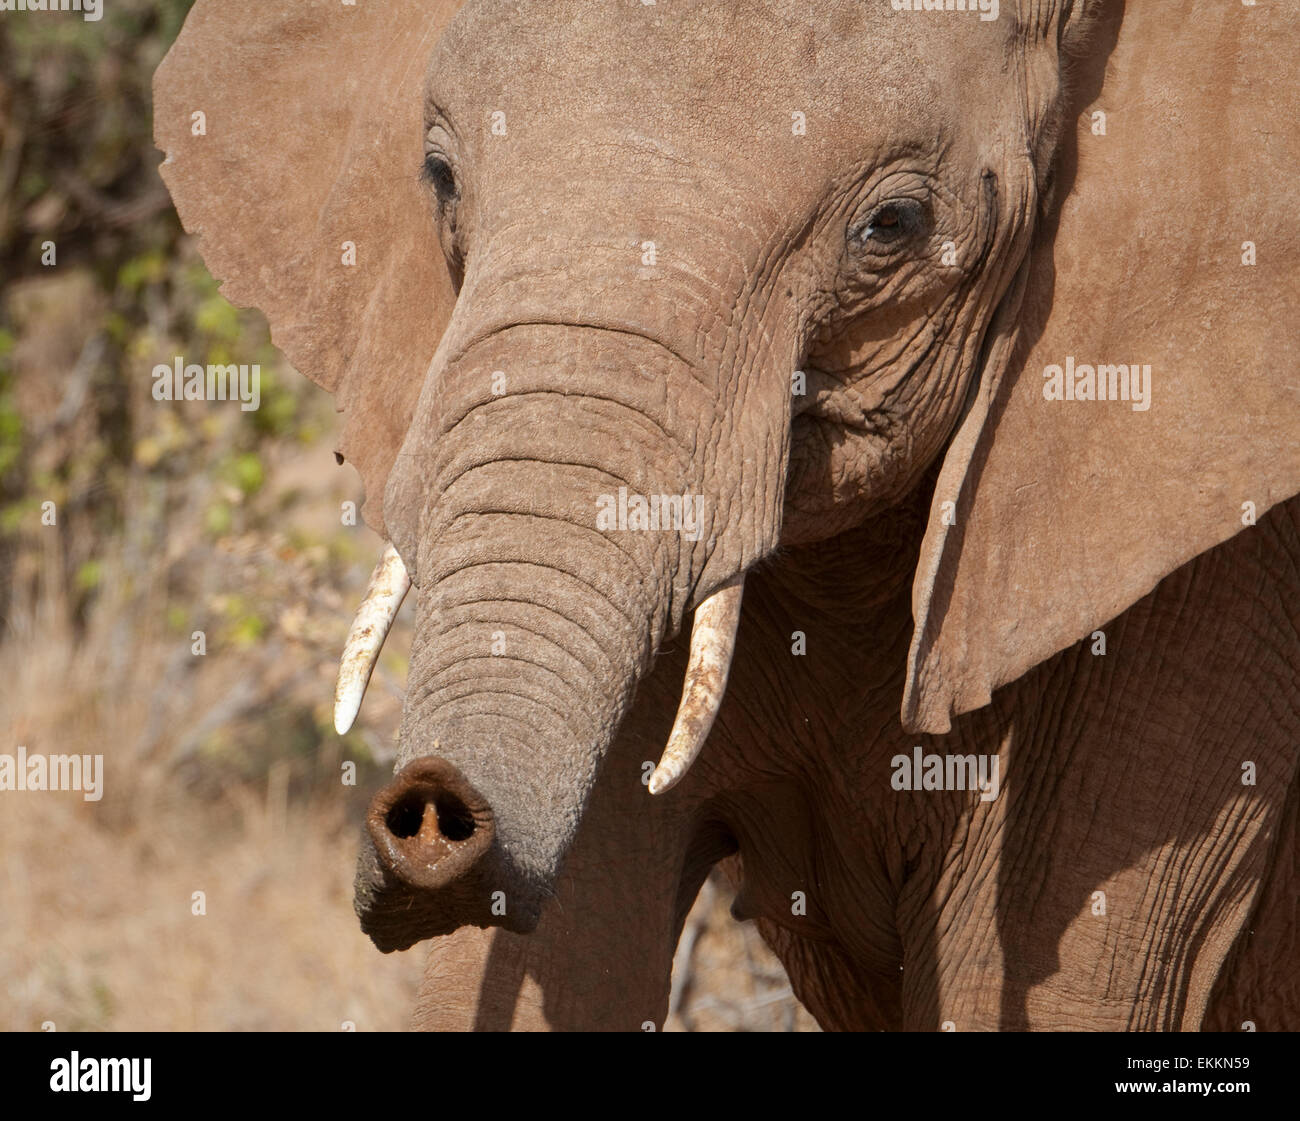 Porträt von Afrikanischer Elefant mit Rüssel verlängert Stockfotografie -  Alamy